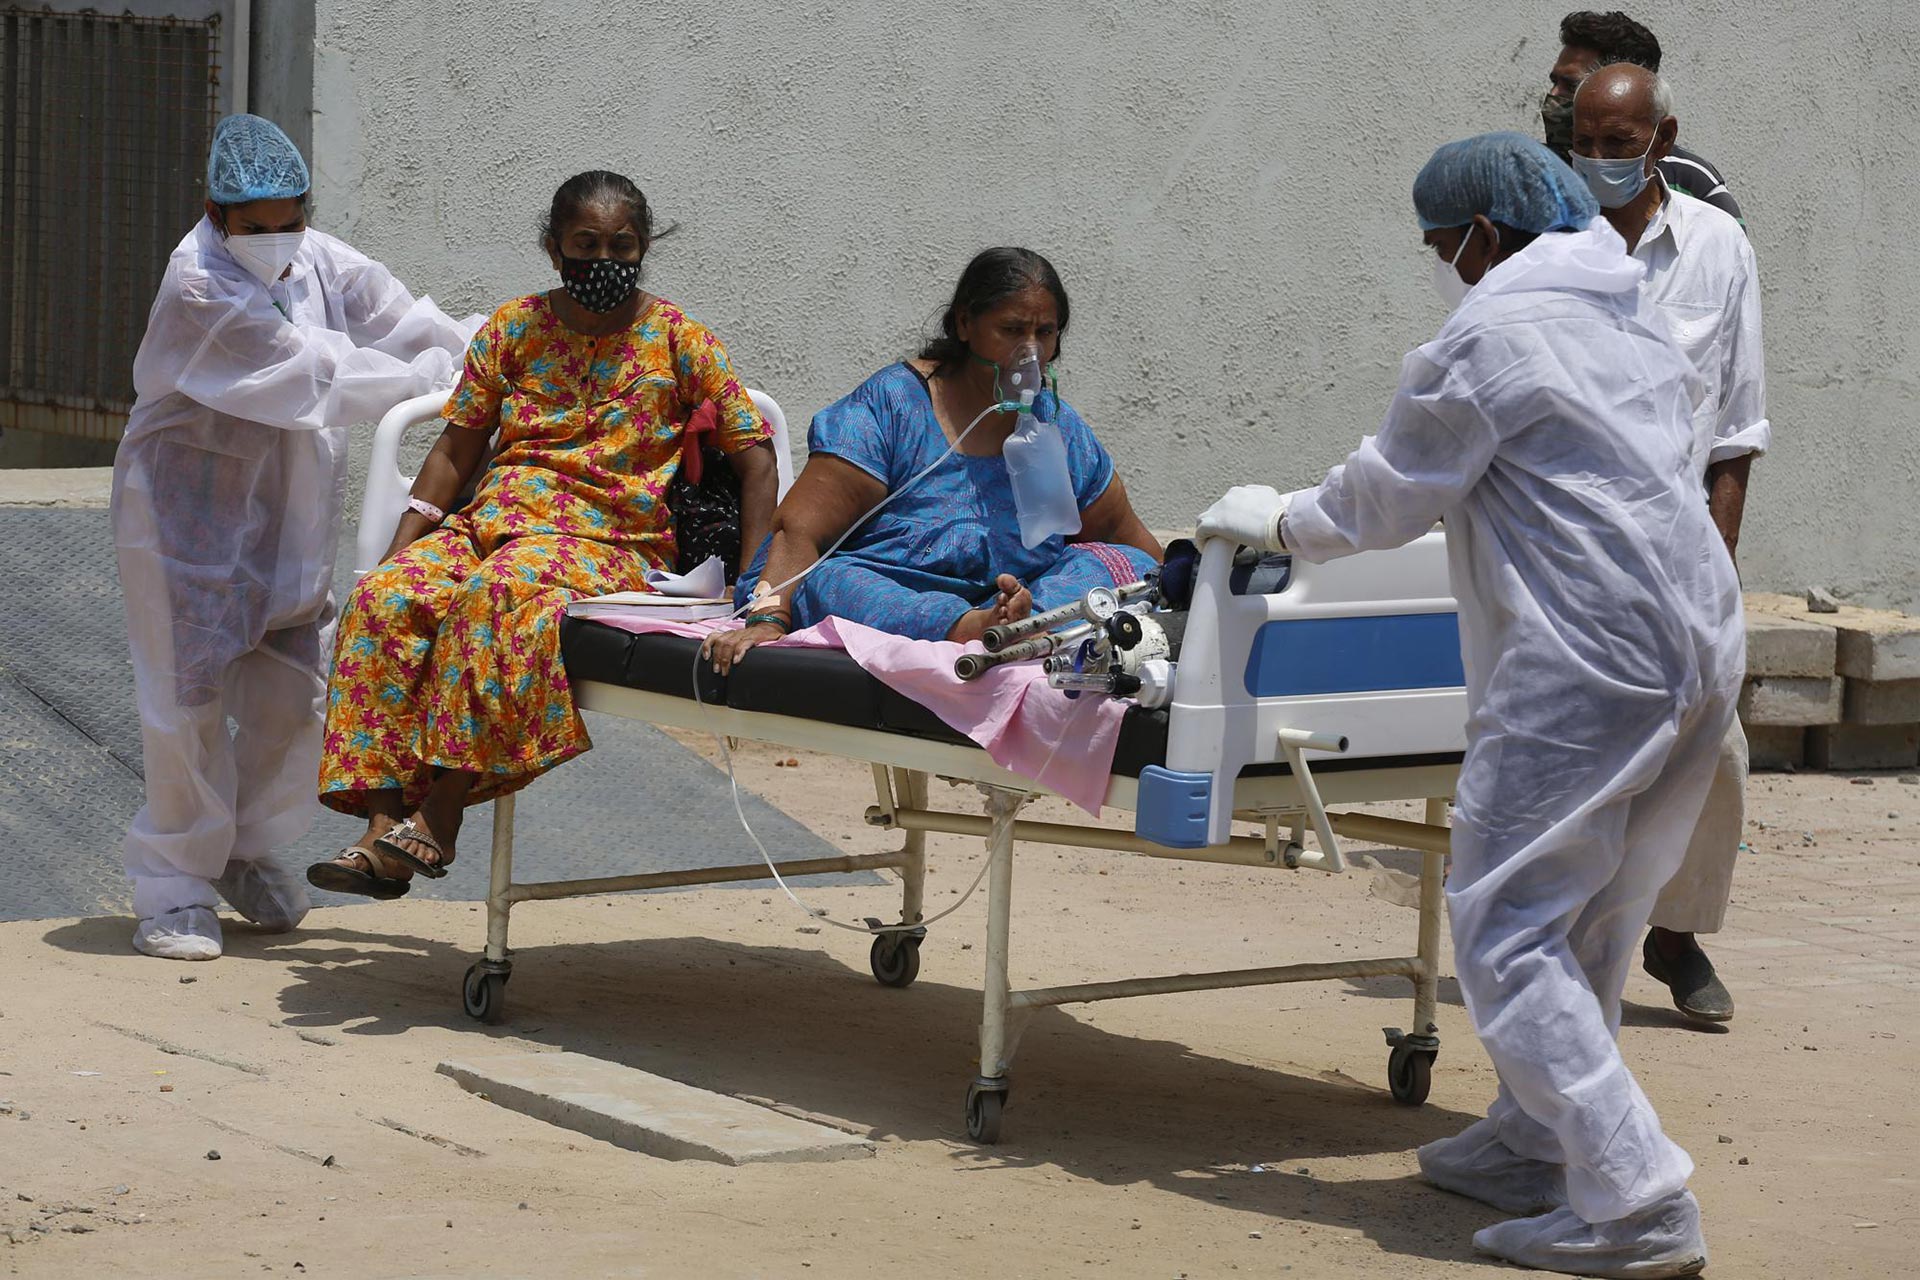 Un trabajador de la salud transporta a los pacientes para trasladarlos de un hospital dedicado al COVID-19 a otro hospital para desocupar la cama para nuevos pacientes, en el hospital Civil de Ahmedabad, India, el martes 13 de abril de 2021 (AP Photo / Ajit Solanki).